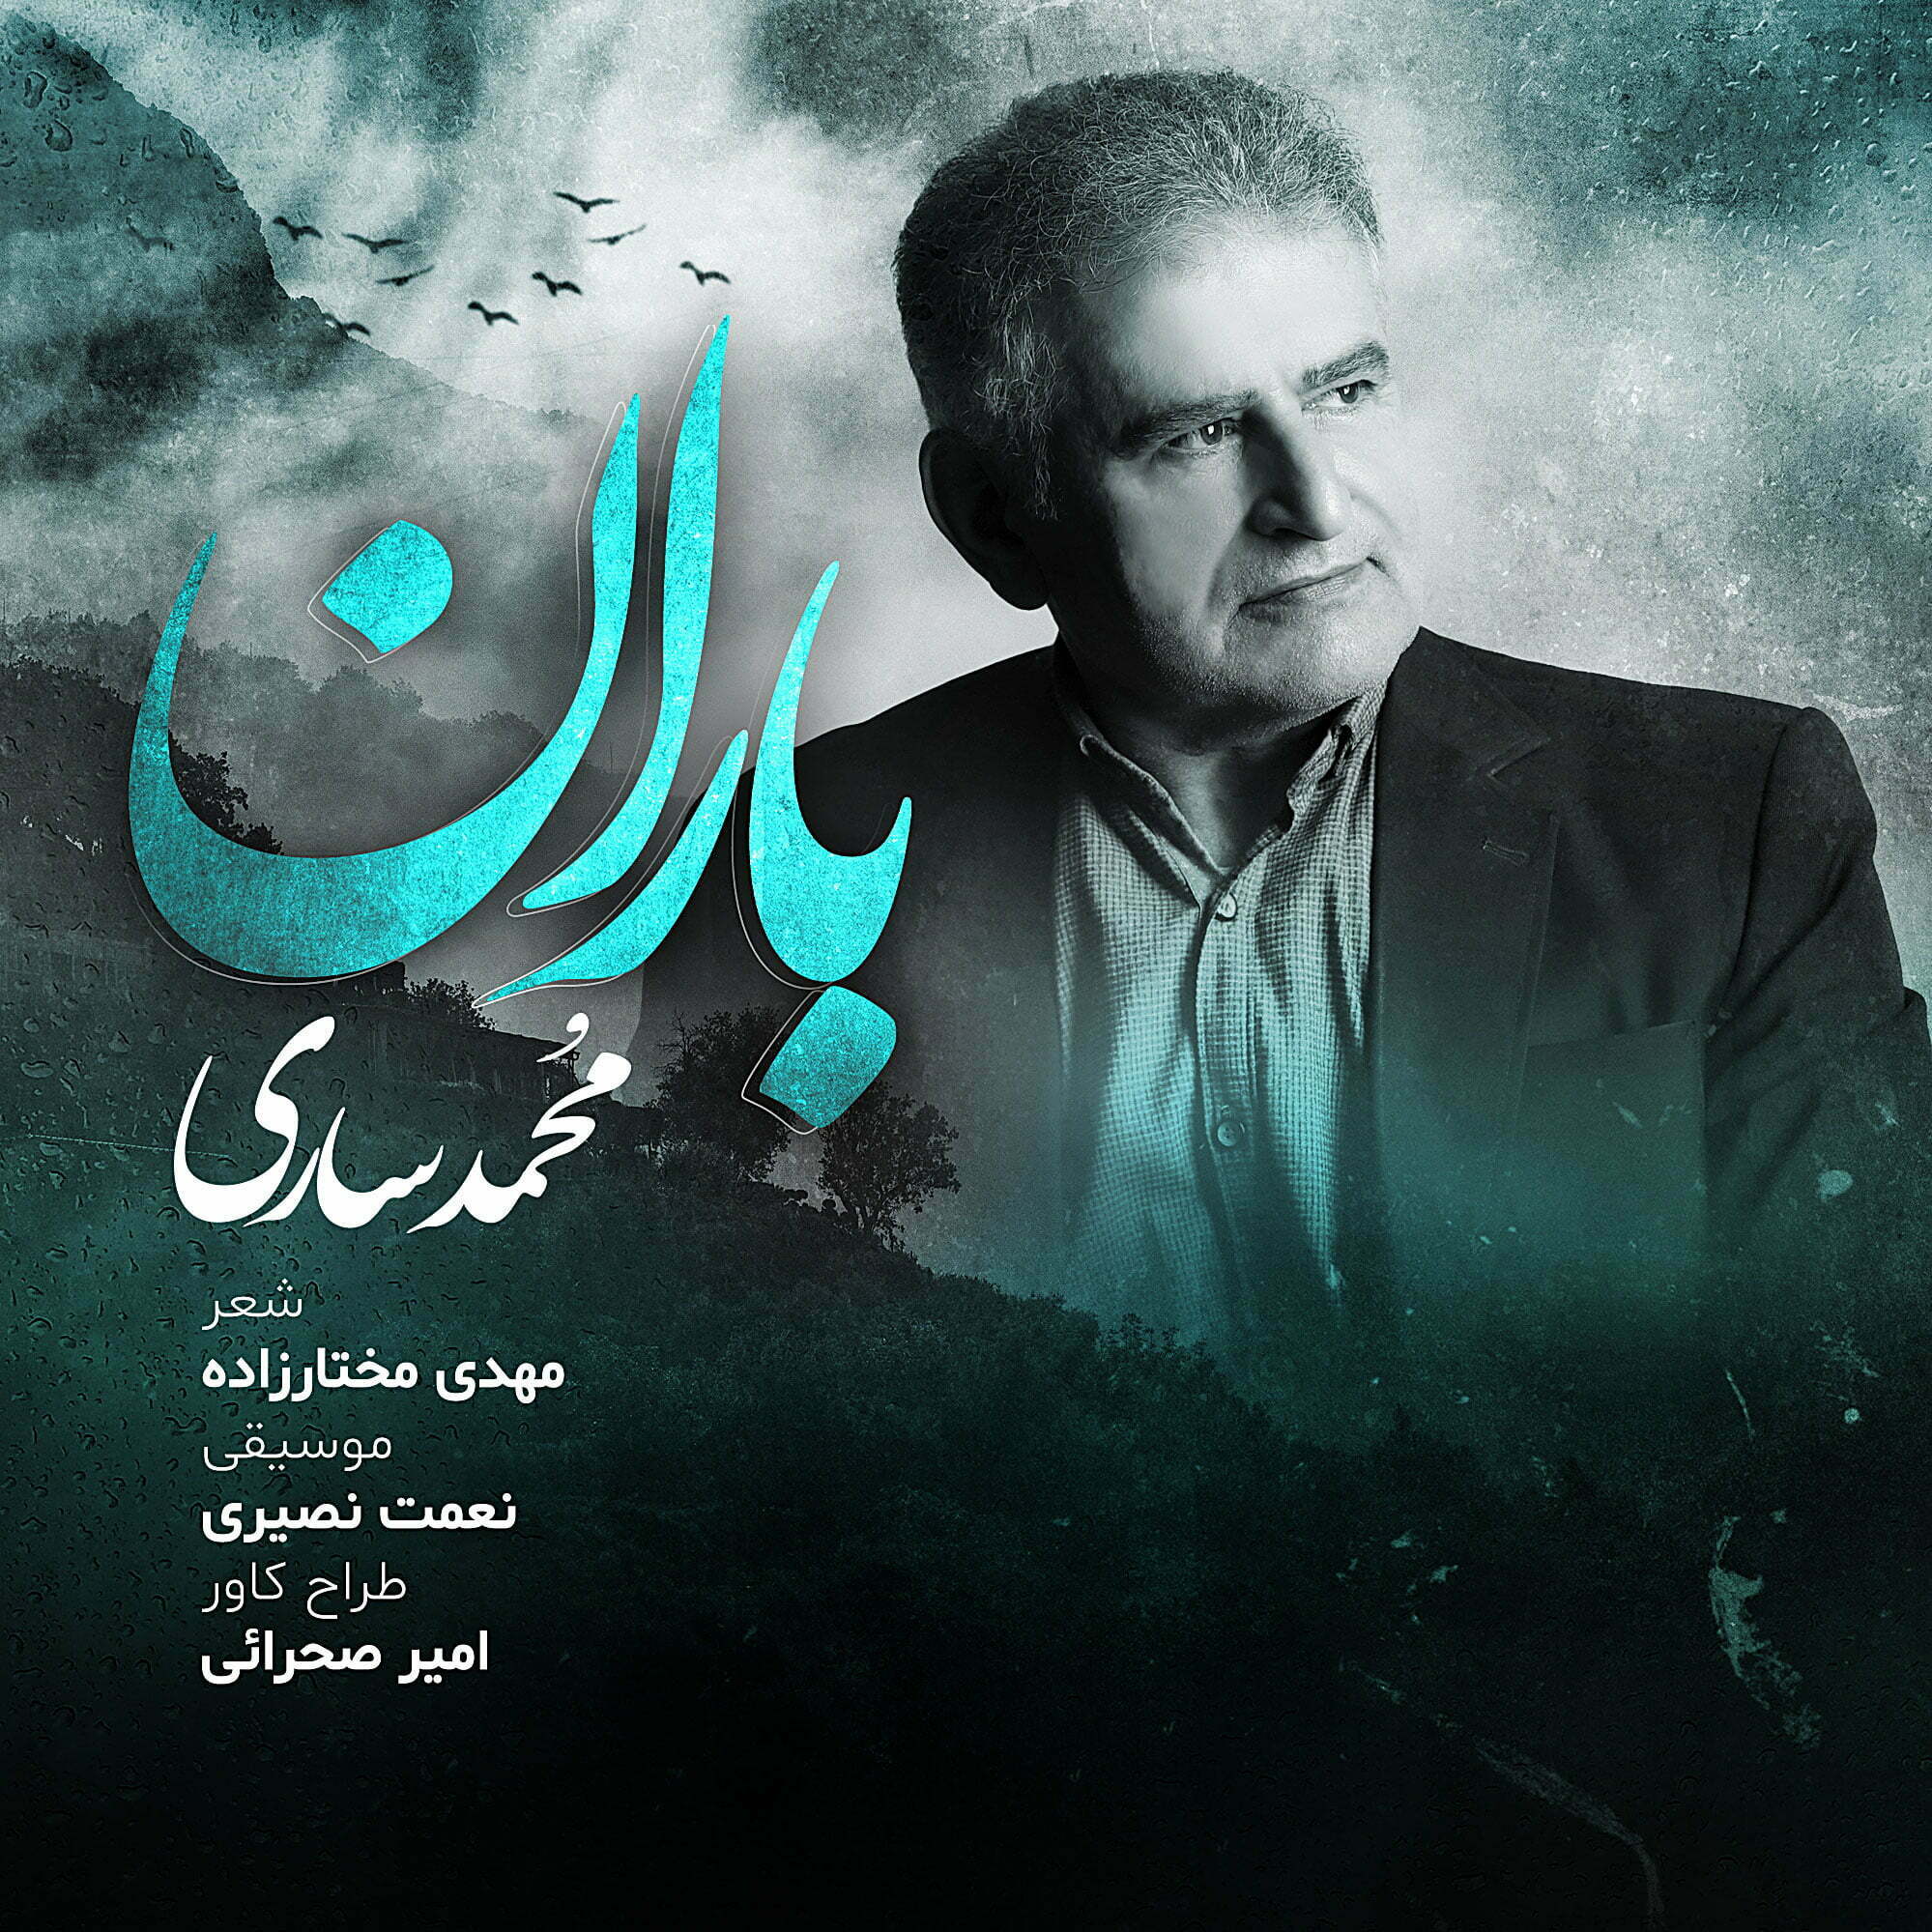 دانلود آهنگ جدید محمد ساری با عنوان باران